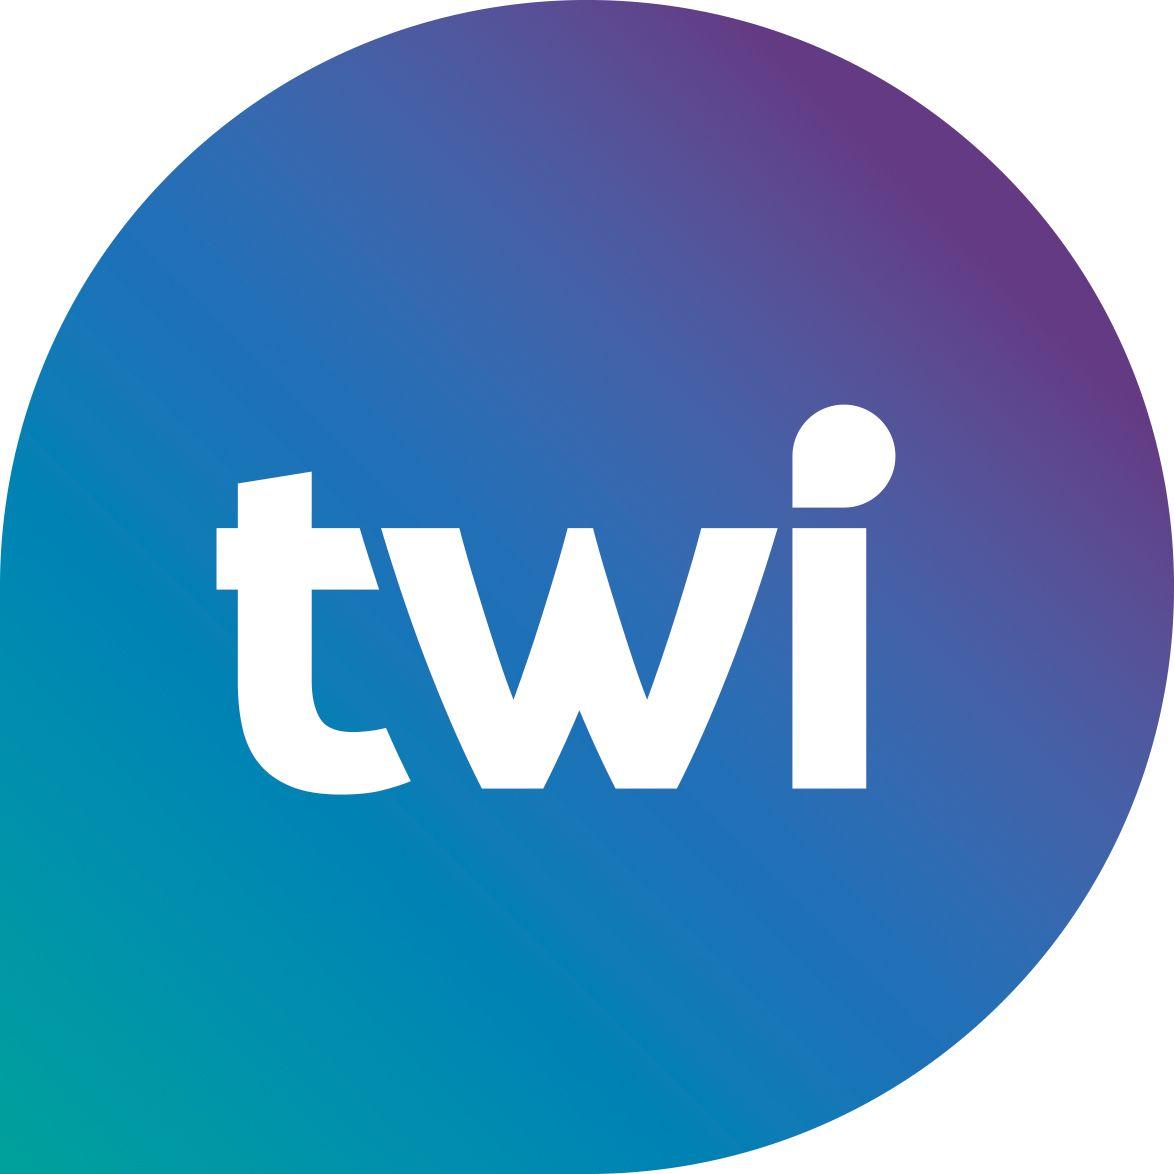 Twi Logo - TWI | PR, Copywriting, Marketing, Digital Essex, Suffolk, London ...